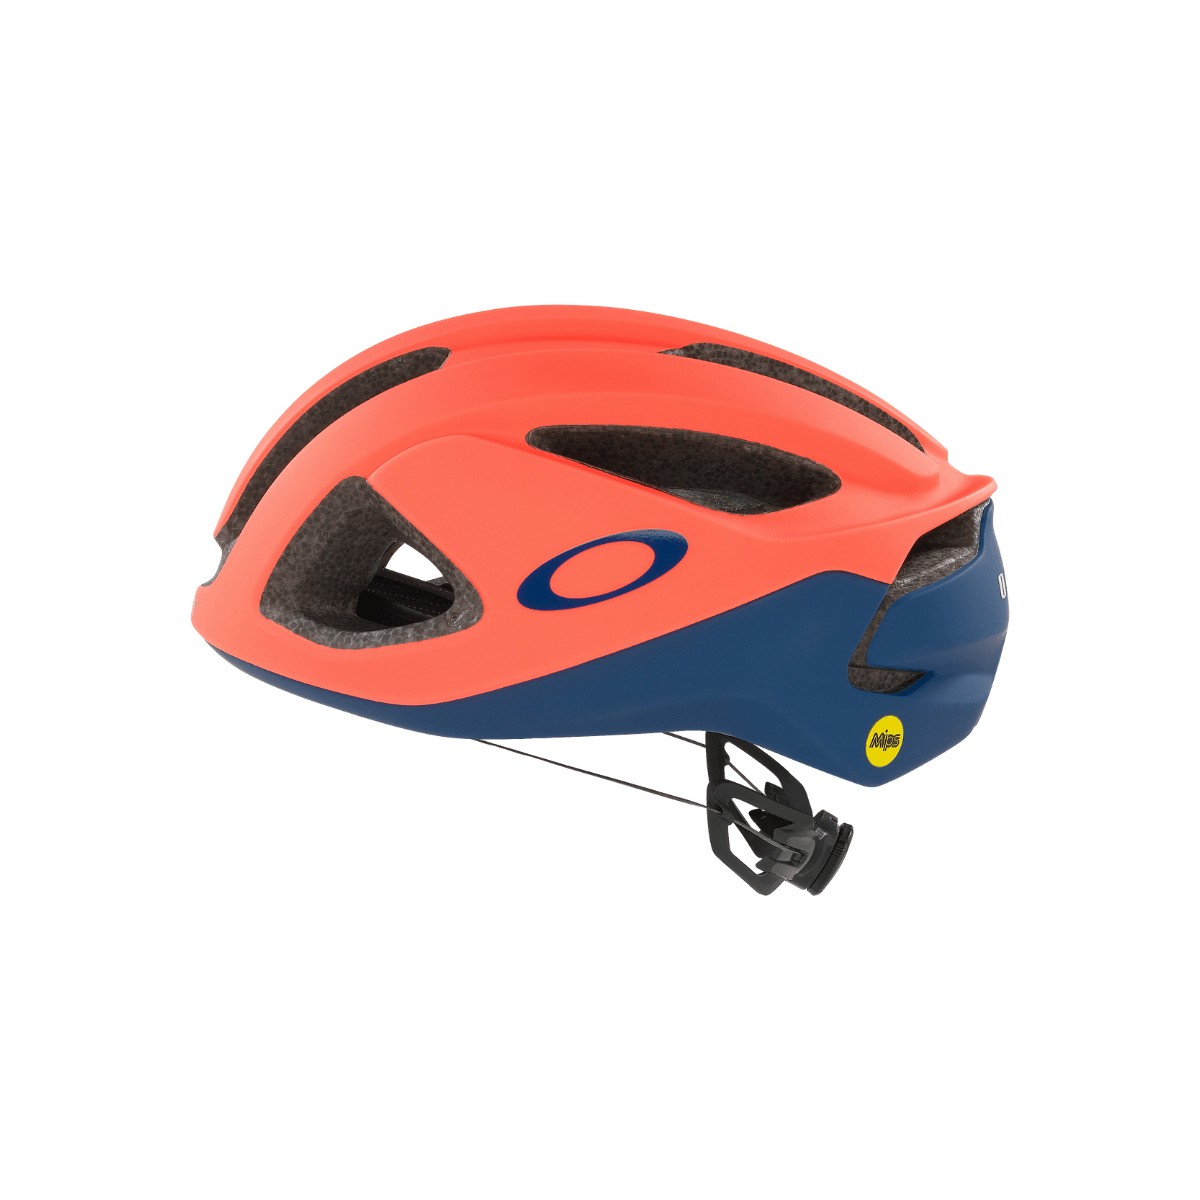 Casco Oakley ARO3 MIPS Tour de France 2021, Talla M (54-58 cm)